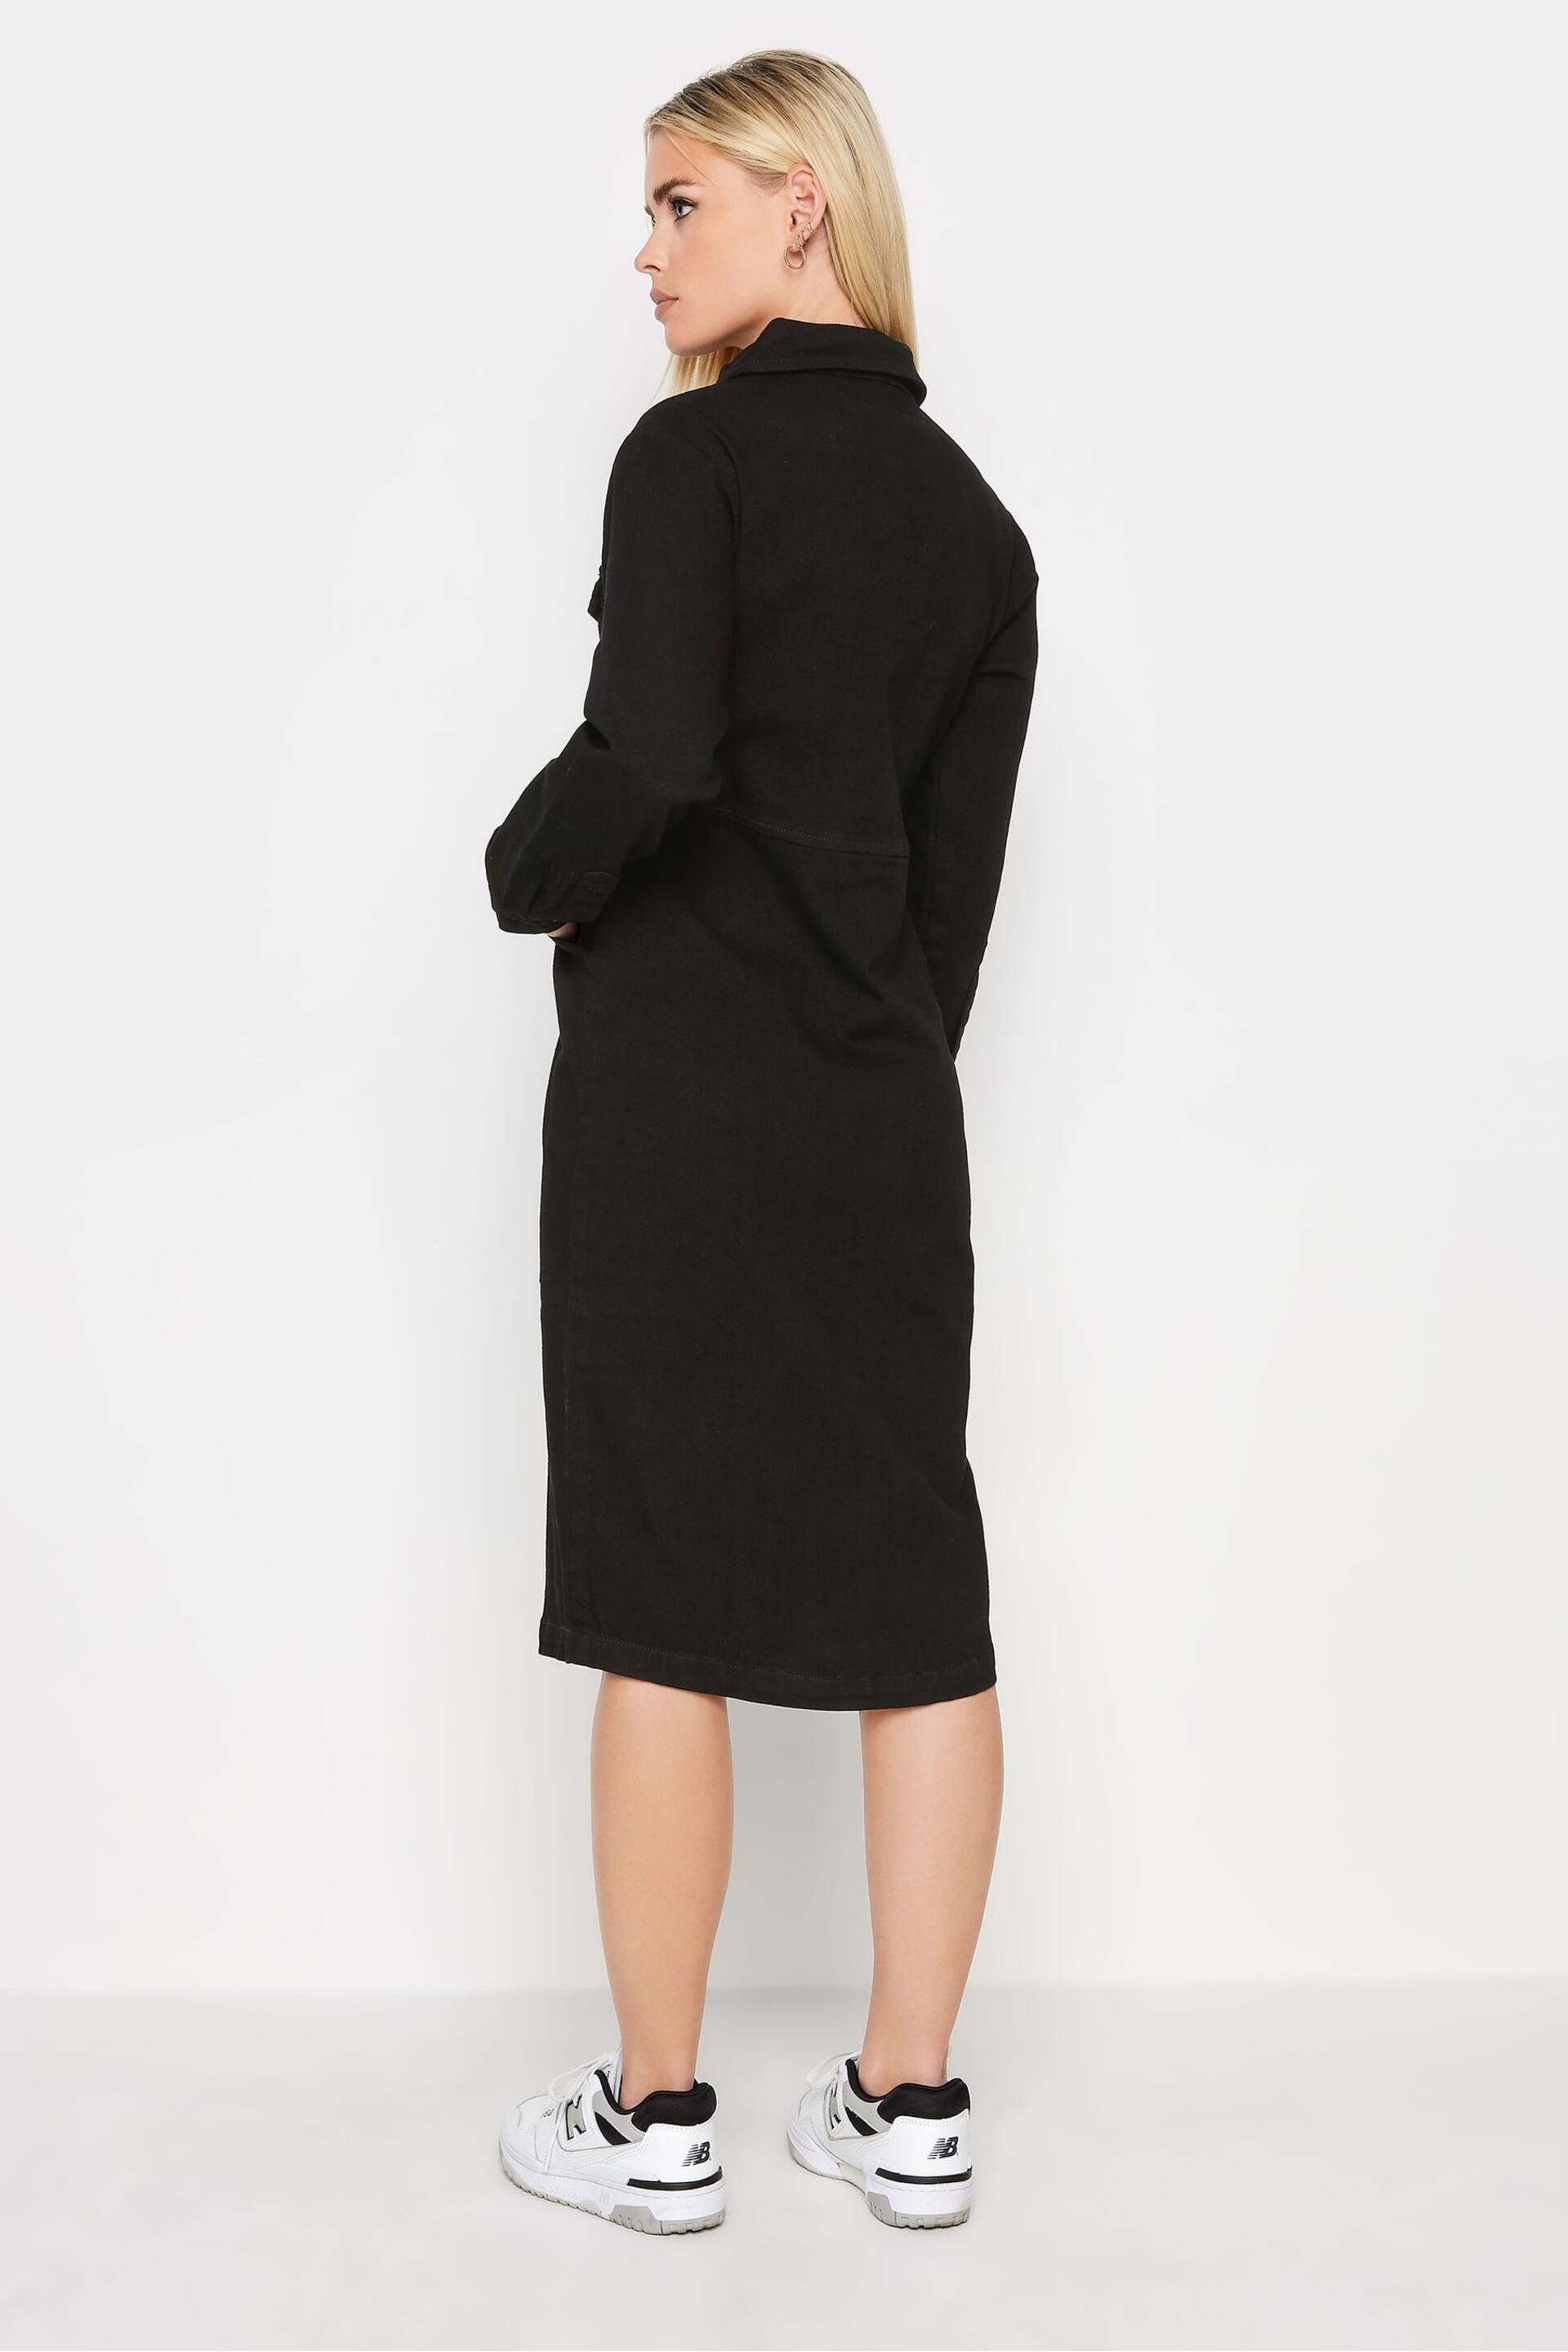 PixieGirl Petite Black Zip Through Denim Midi Dress - Image 2 of 4